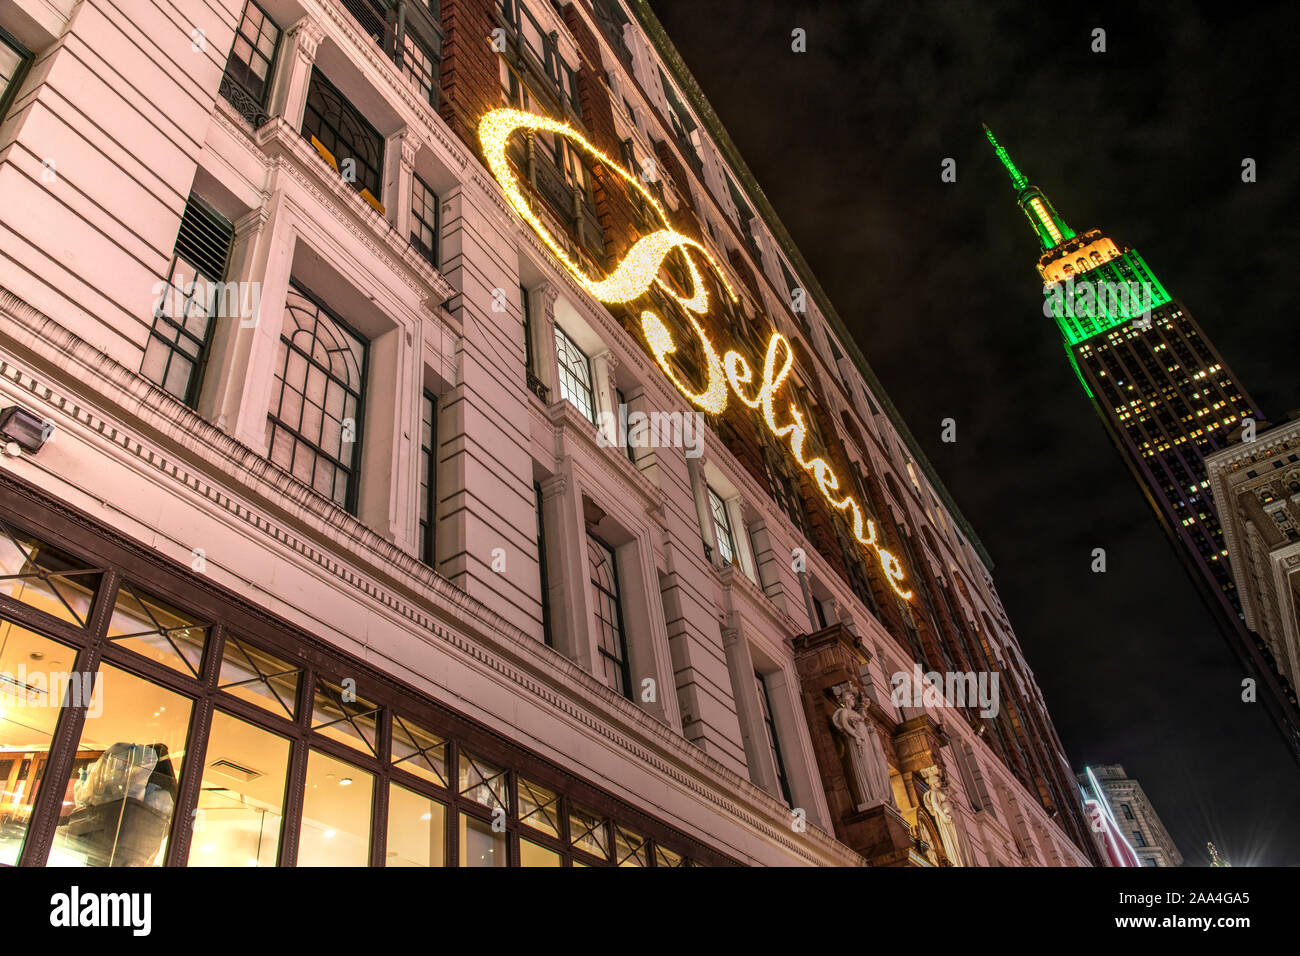 I grandi magazzini Macy con credere a neon di firmare per la facciata dell'edificio, Herald Square, Manhattan, New York, Stati Uniti d'America Foto Stock